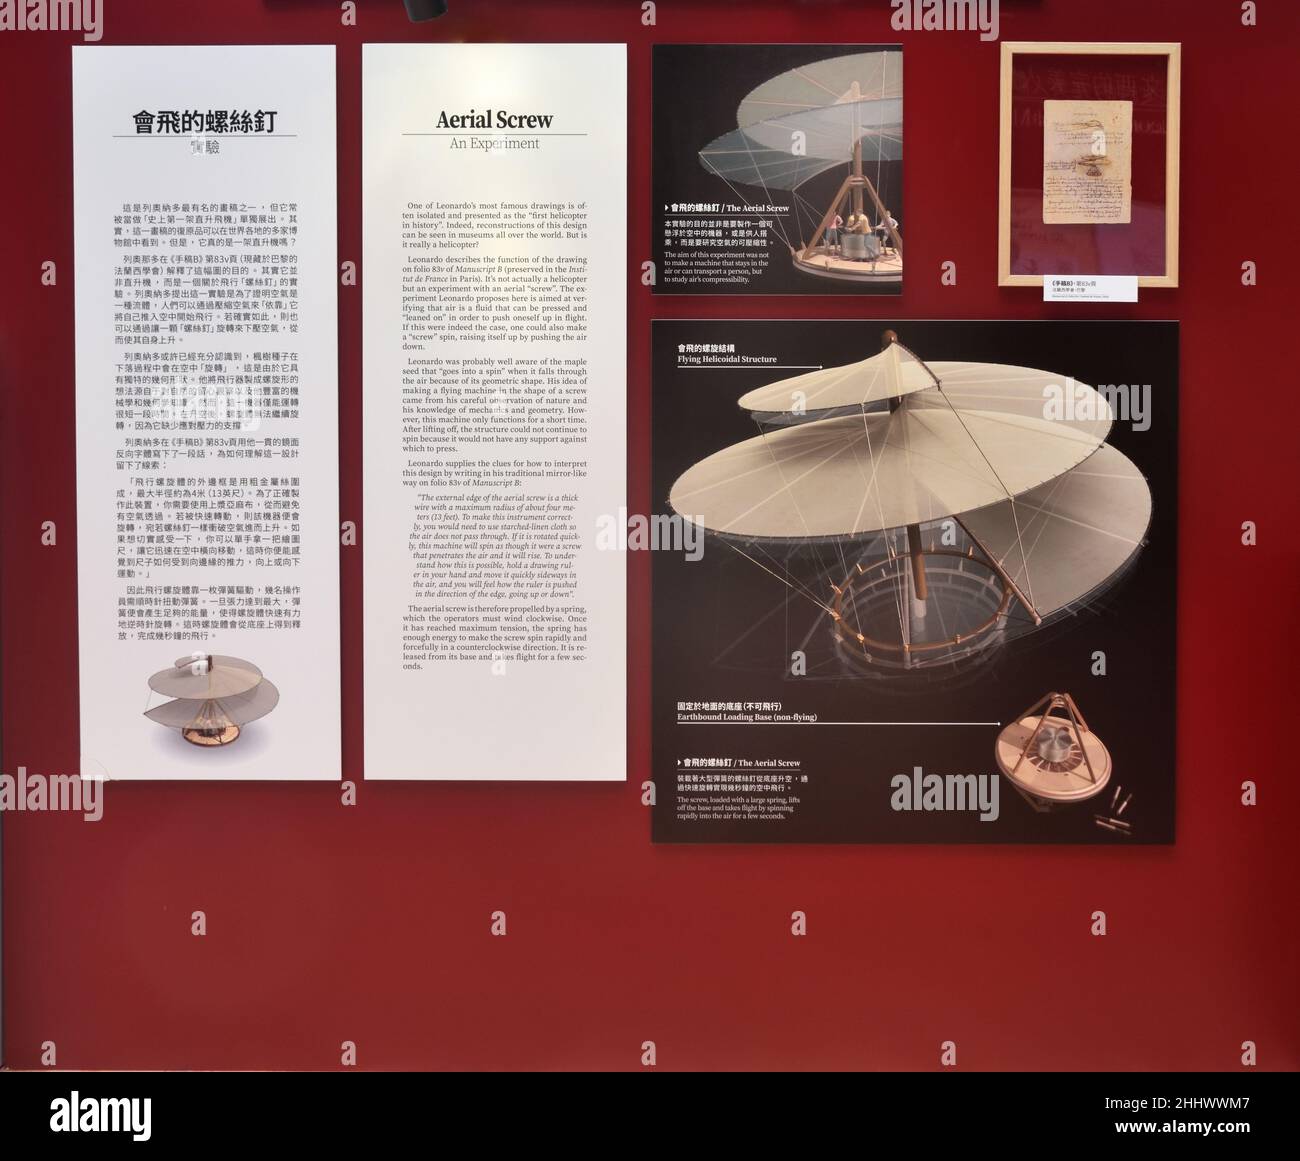 Photo et description du tableau de Aerial Screw dans l'exposition Leonardo da Vinci 500th anniversaire à Hong Kong Banque D'Images